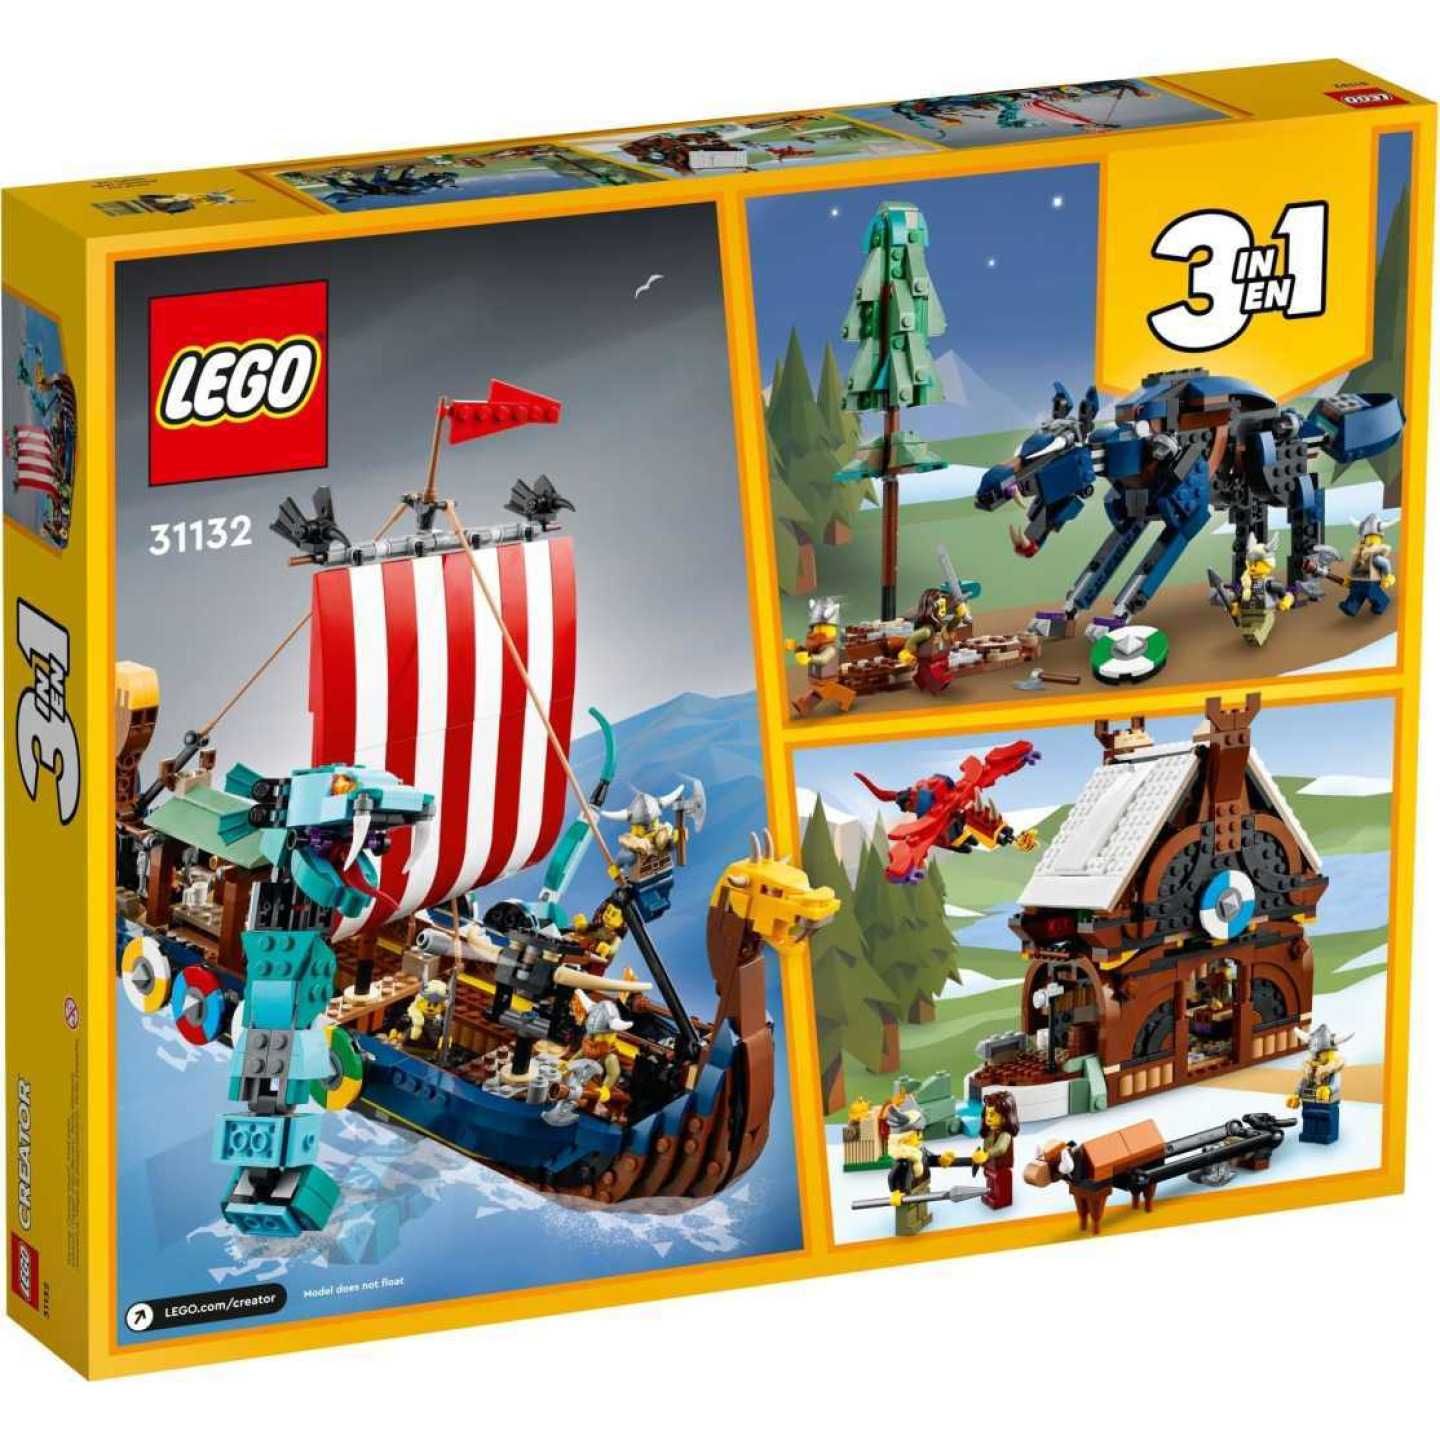 Lego Creator 31132 Корабль викингов и Мидгардский змей. В наличии